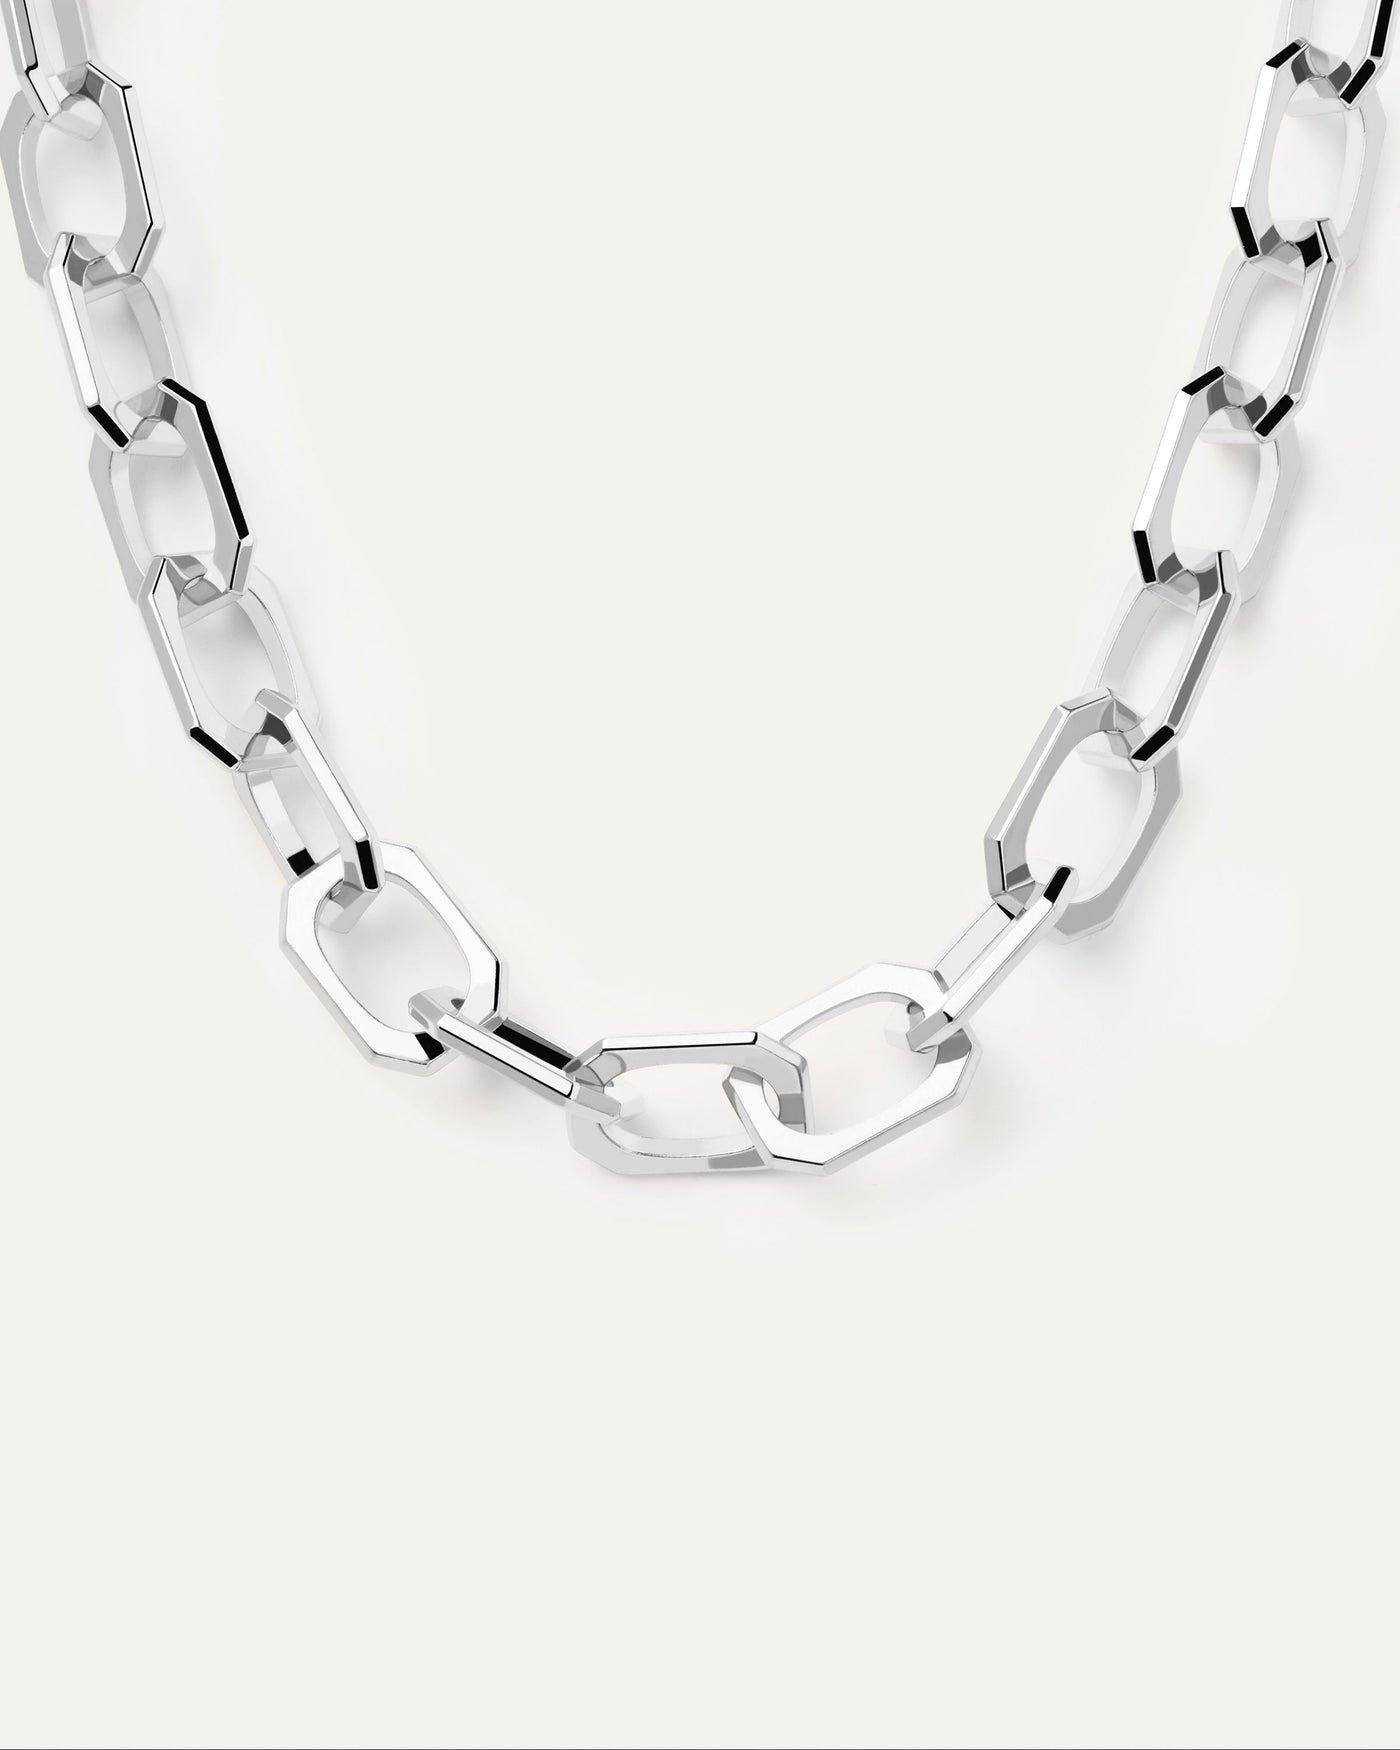 Large Signature silberne Halskette. Kabelketten -Halskette mit großen oktogonalen Glieder in Silber -Rhodiumbeschichtung. Erhalten Sie die neuesten Produkte von PDPAOLA. Geben Sie Ihre Bestellung sicher auf und erhalten Sie diesen Bestseller.